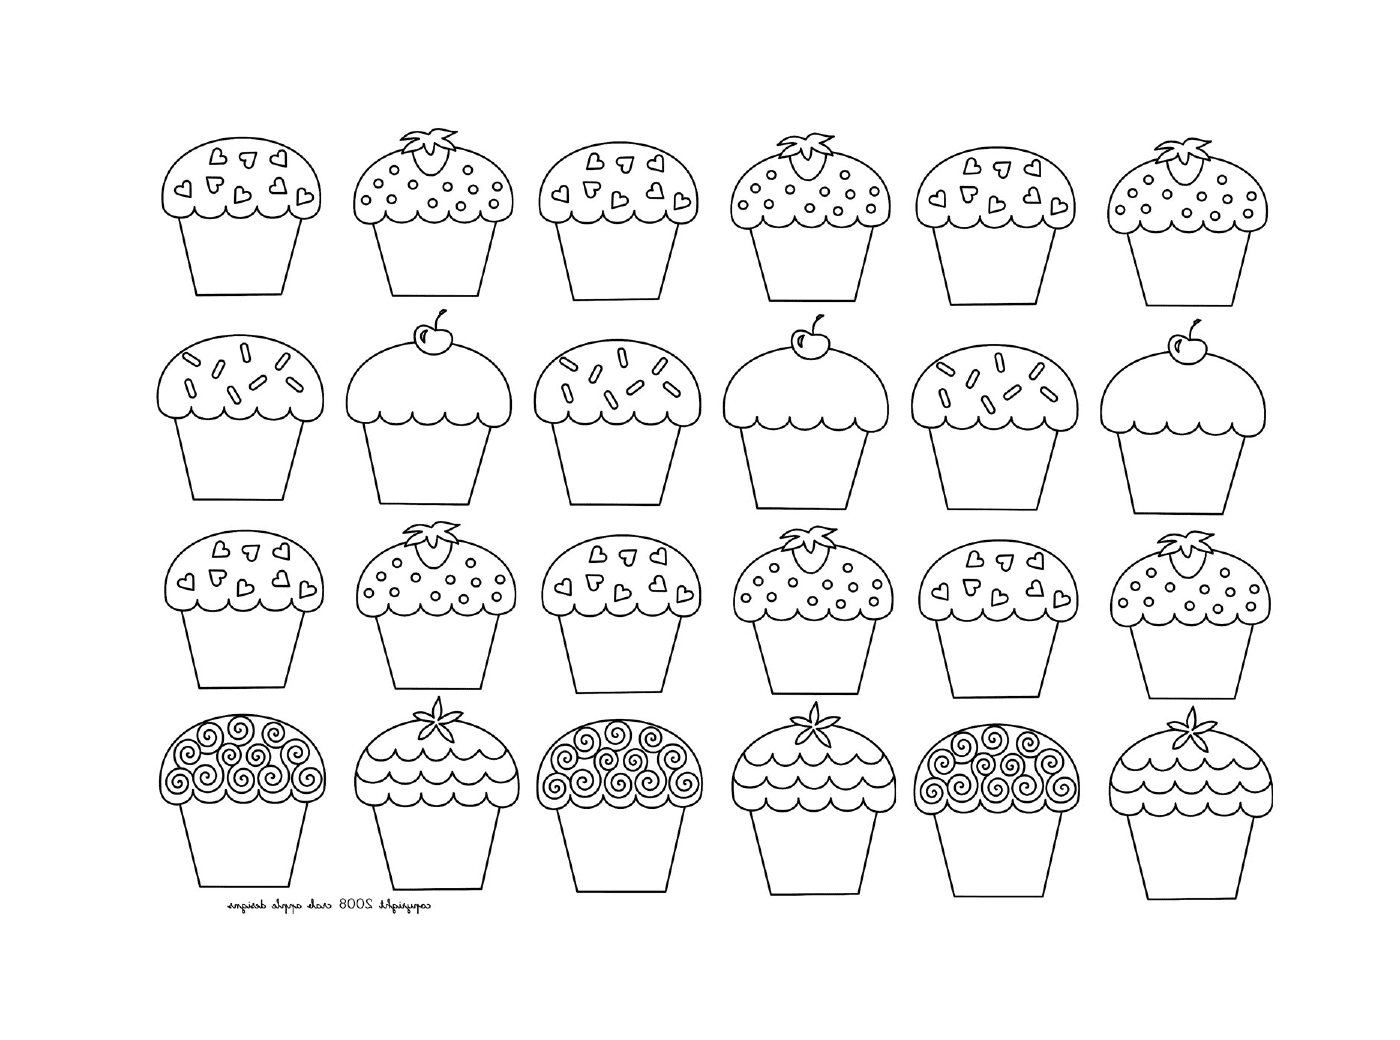  Um mosaico de cupcakes infantis, de diferentes tipos 